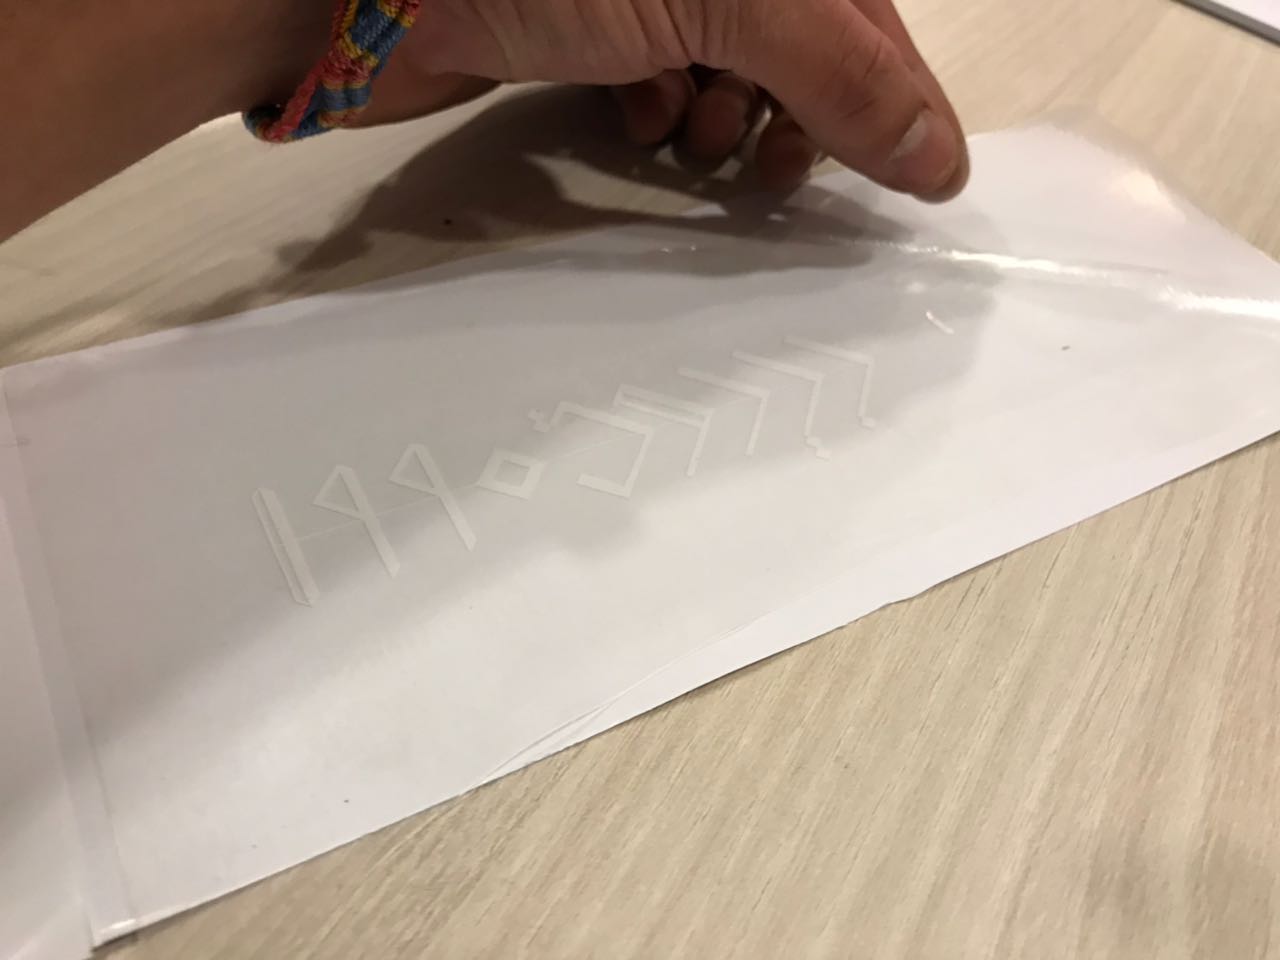 Adhesive Paper